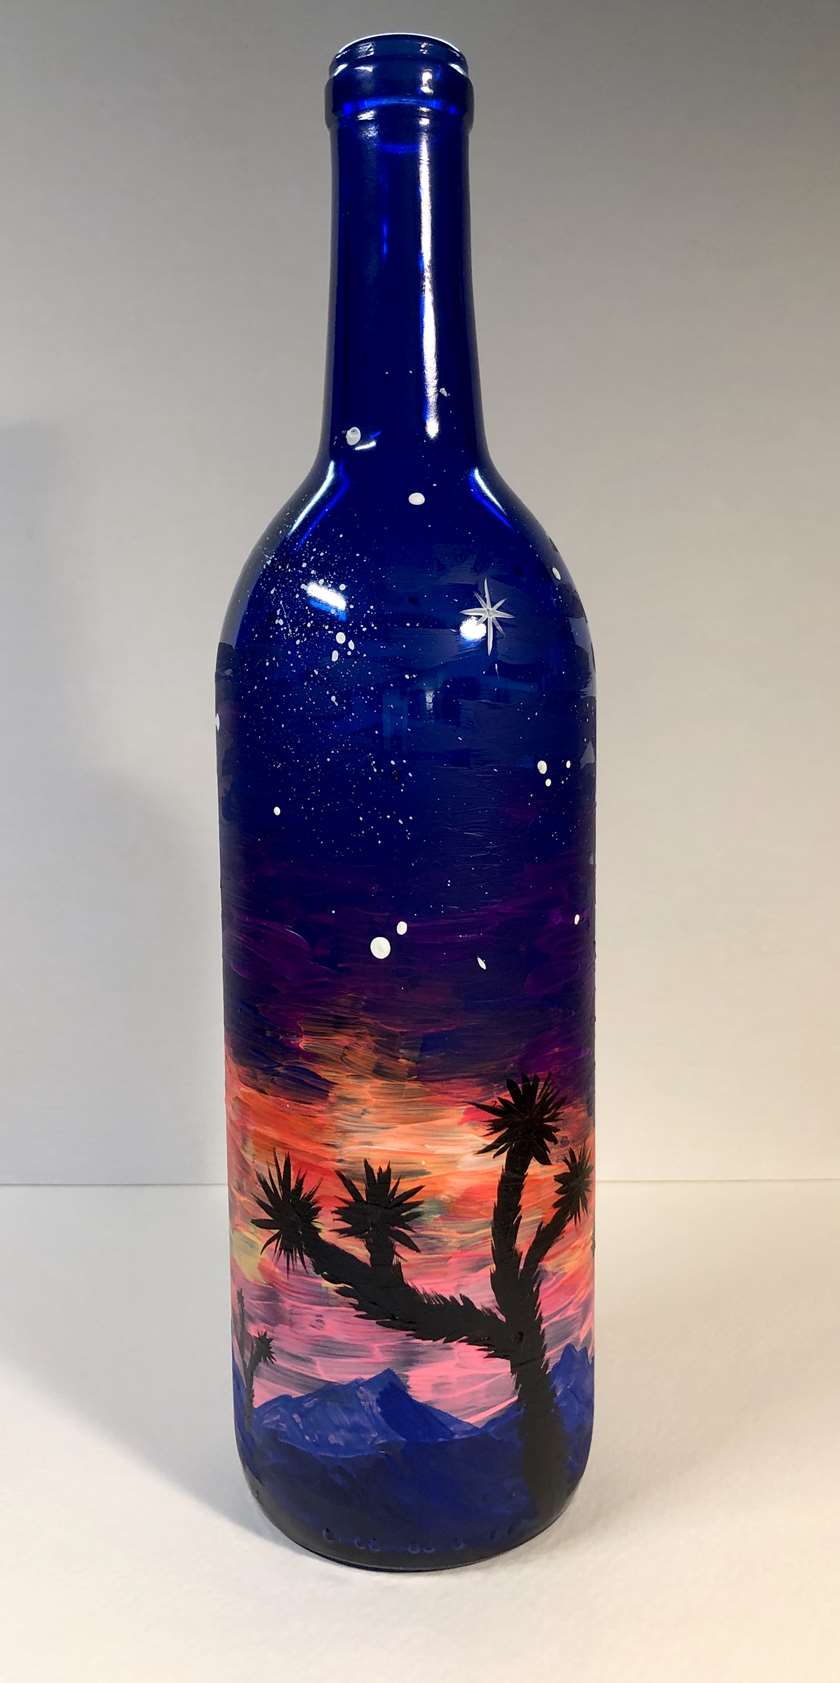 Twilight Desert in a Bottle